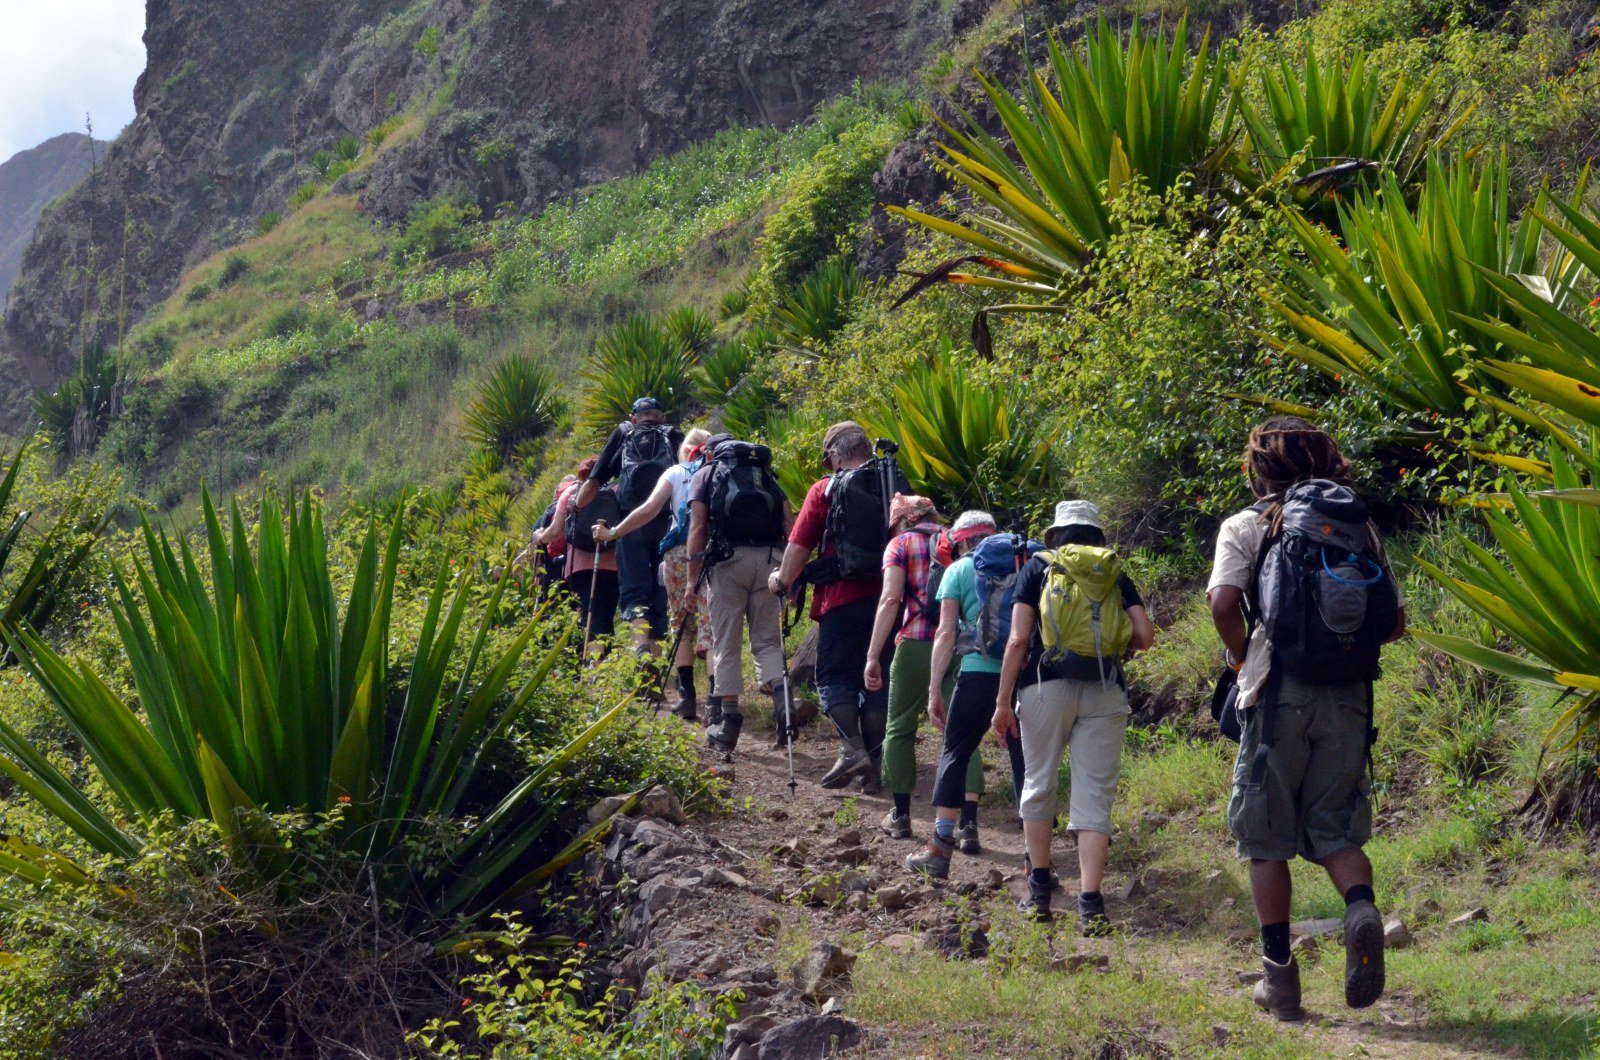 Santo Antao: Die ca. 6-stündige leicht bis mittelschwere Wanderung zum Pico de Antonio nach Figueiral führt Sie durch tropische Landschaften mit fantastischen Ausblicken. Tritt- und Schwindelfreiheit sowie gutes Schuhwerk sind Voraussetzungen für diese Tour im grünen Val do Paul. Die Wanderung endet im tropischen Tal von Figueiral.